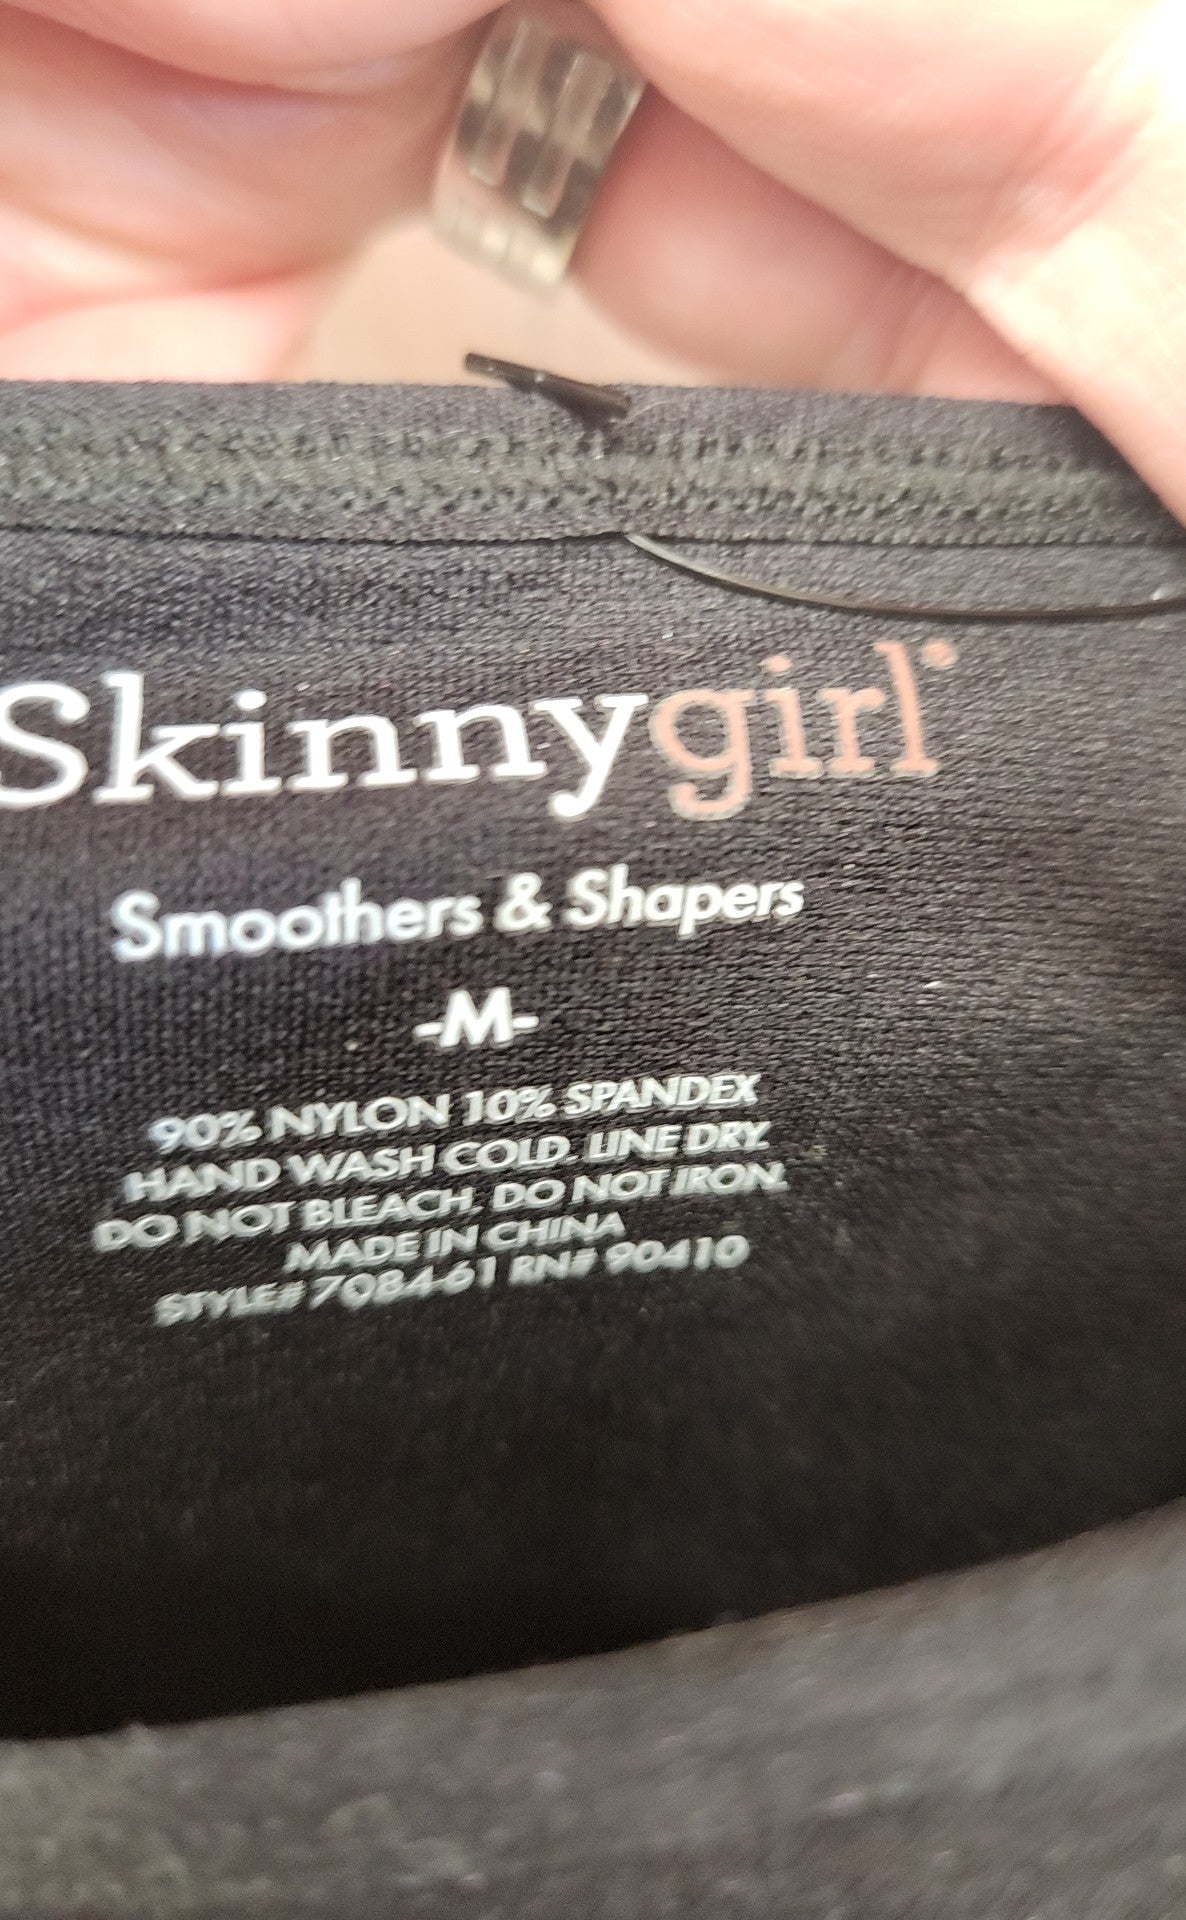 Skinny Girl Women's Size M Black Sleeveless Top